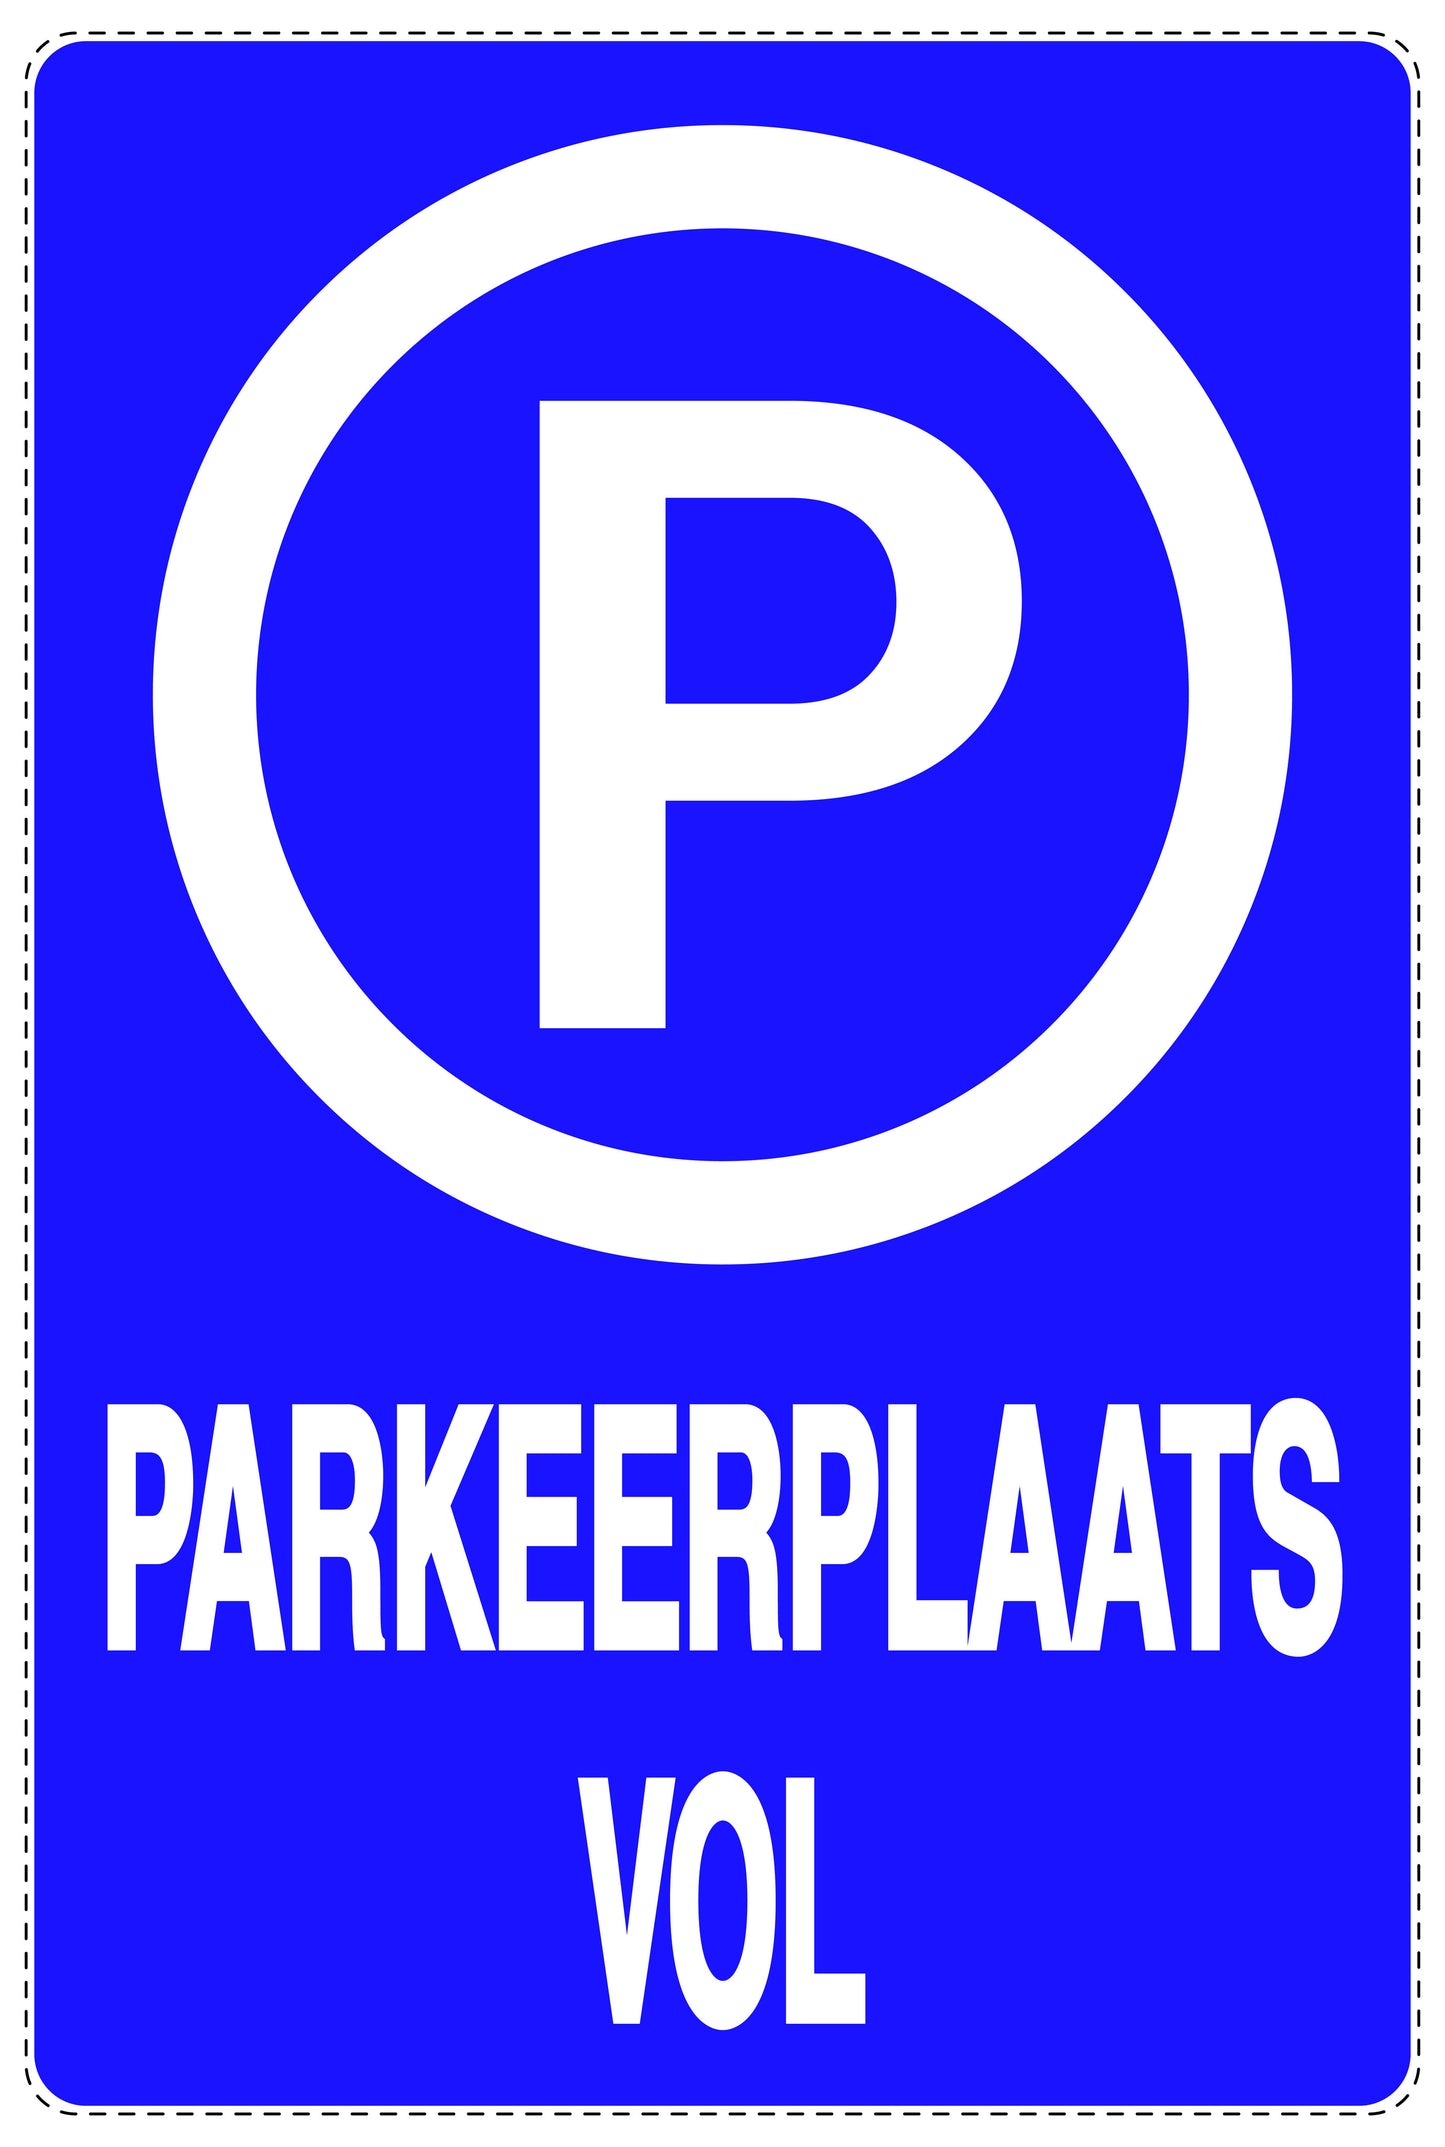 Niet parkeren Sticker "Parkeerplaats vol" EW-NPRK-2280-44